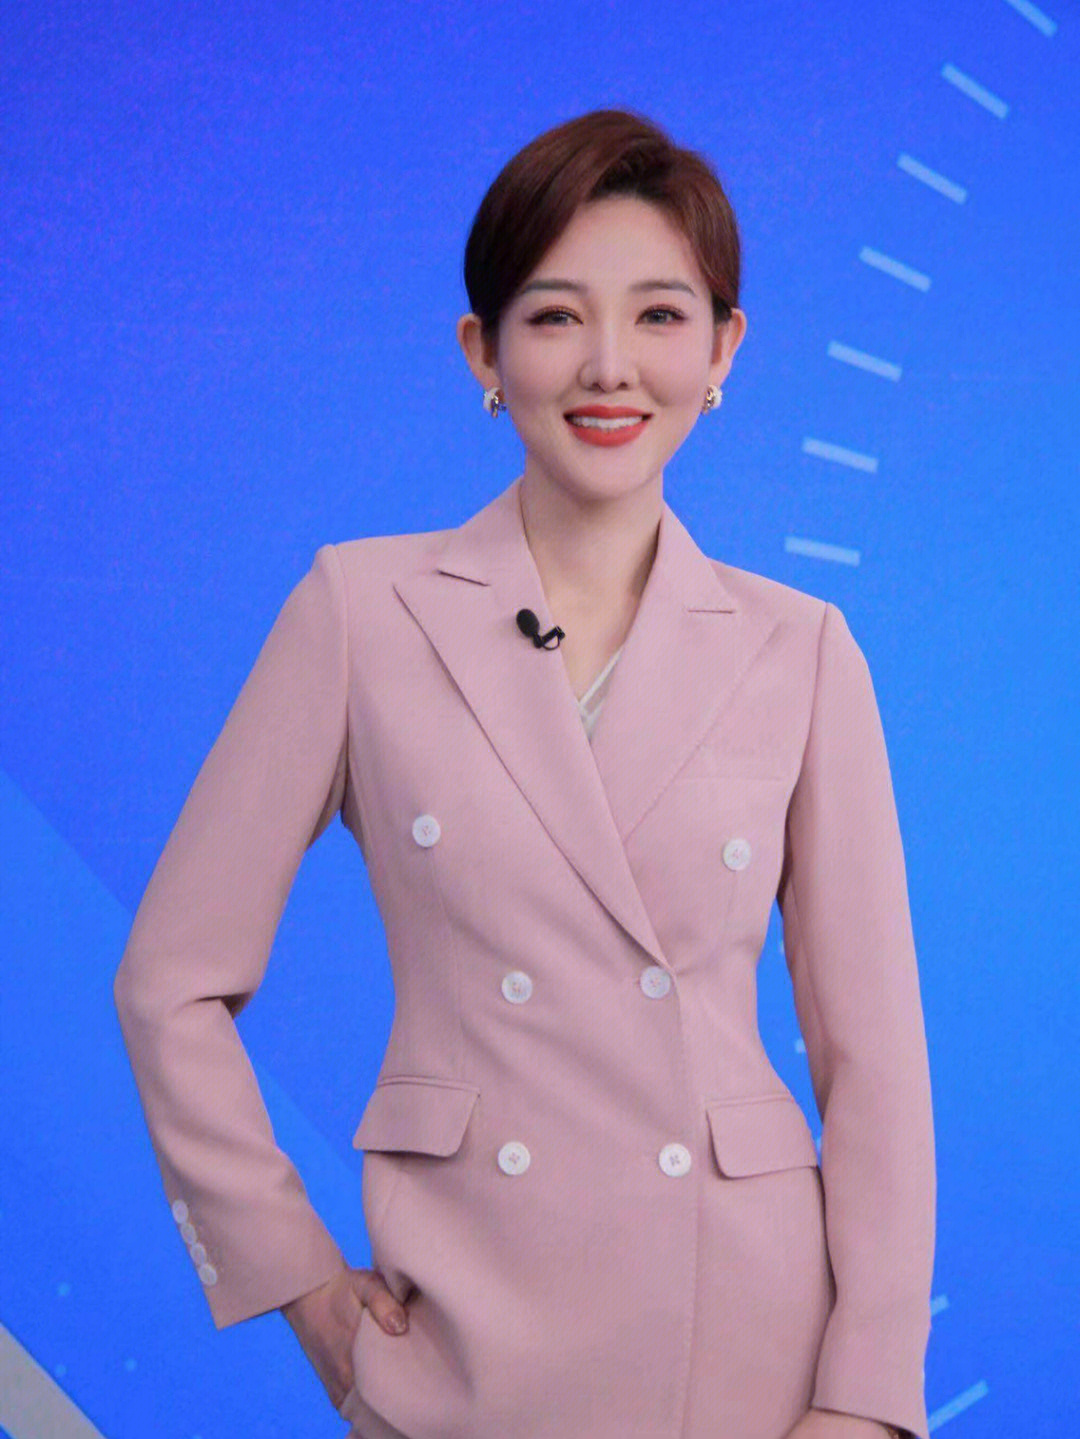 穿着舒适性高,粉色温柔优雅知性感谢电影频道小姐姐 郭玮发来的买家秀